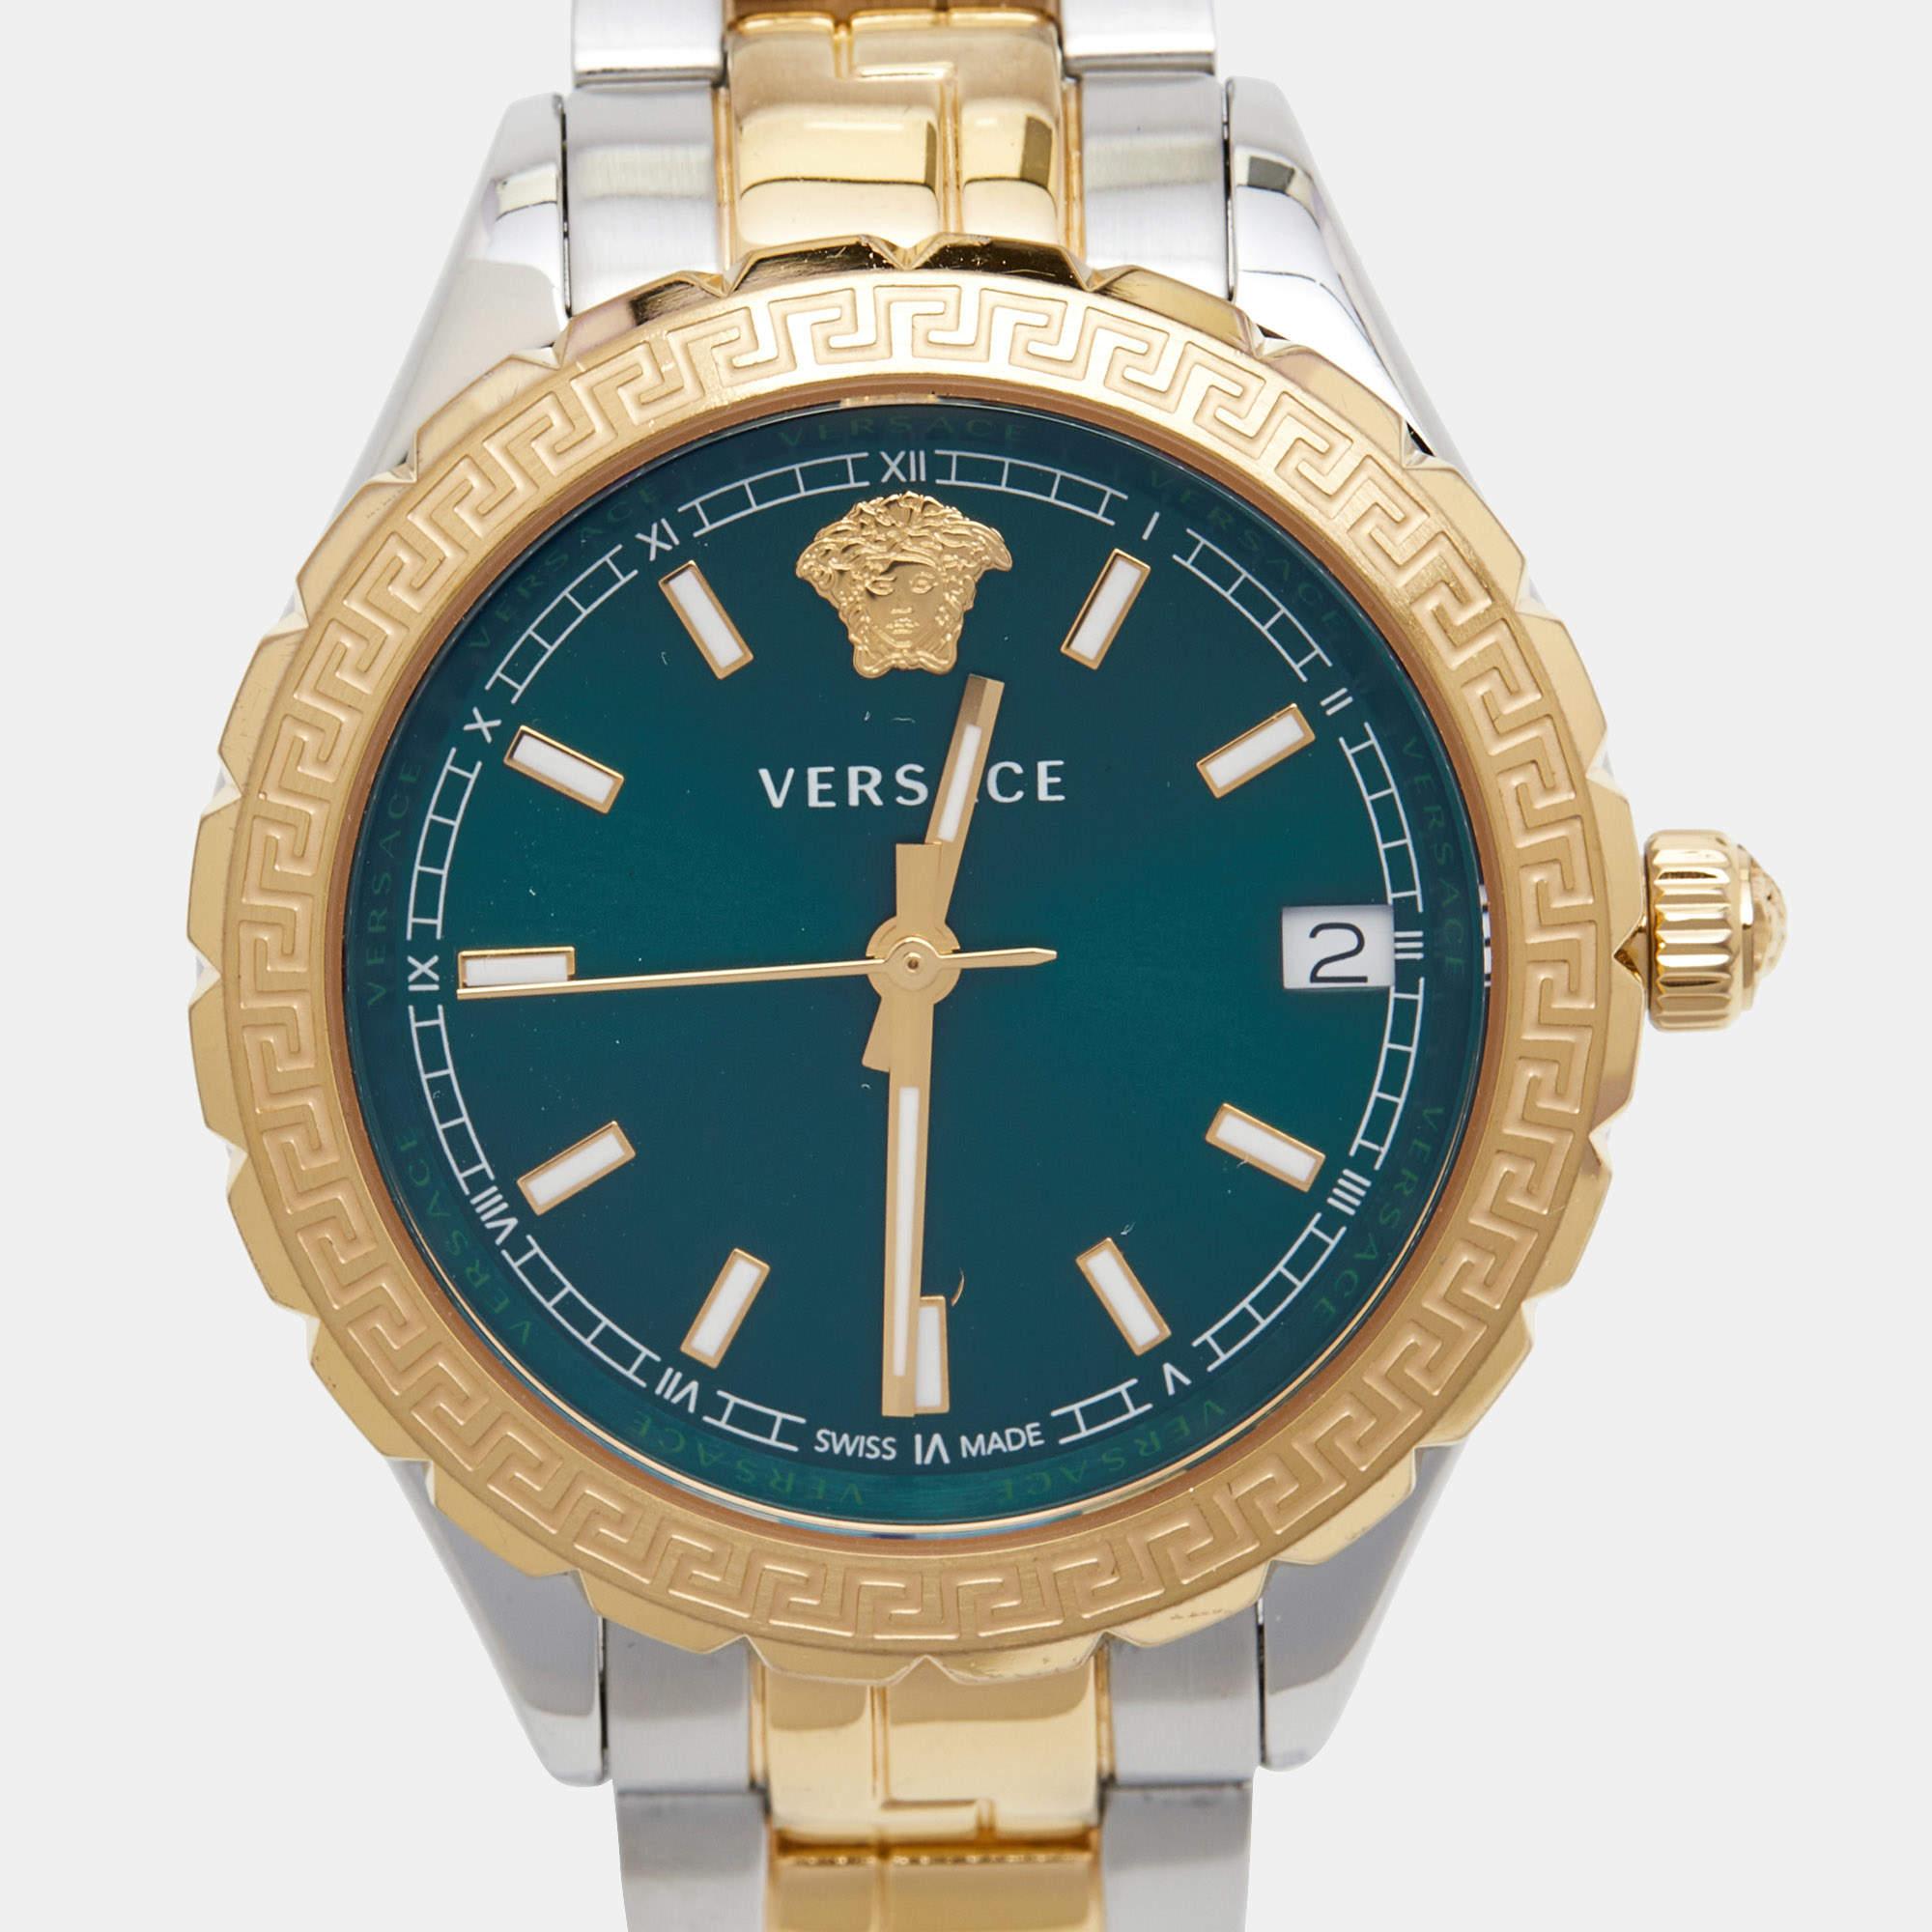 La montre-bracelet pour femme Versace Hellenyium V12050016 respire l'élégance et la sophistication. Son design saisissant associe une teinte verte vibrante sur le cadran à un luxueux acier inoxydable en deux tons, créant ainsi une esthétique